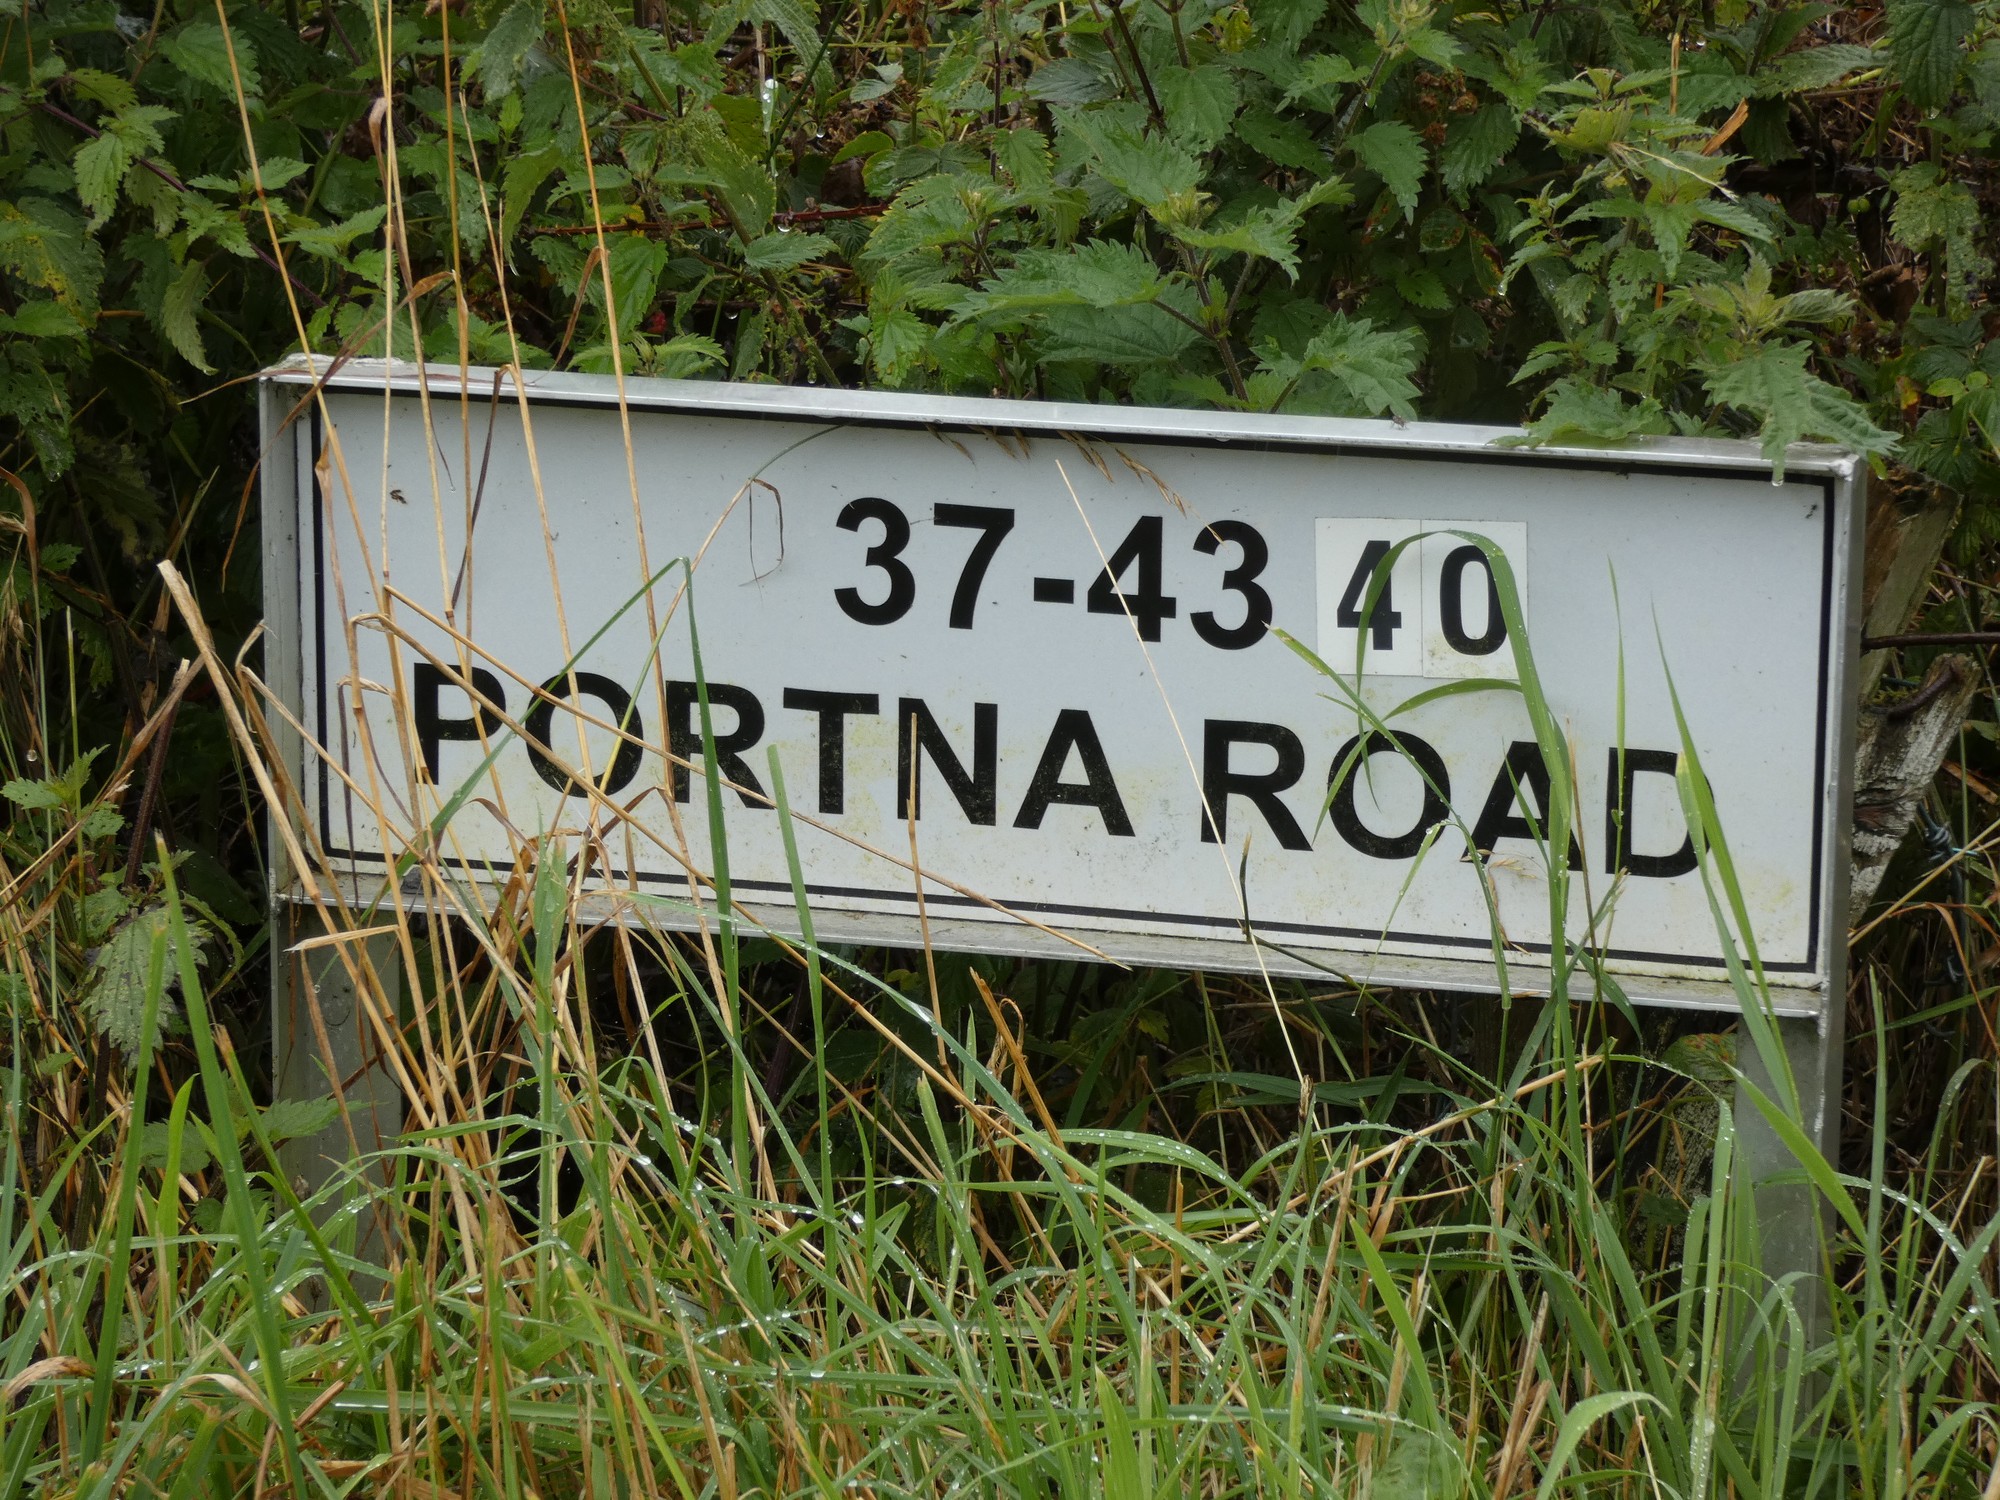 60m North of 40 Portna Road